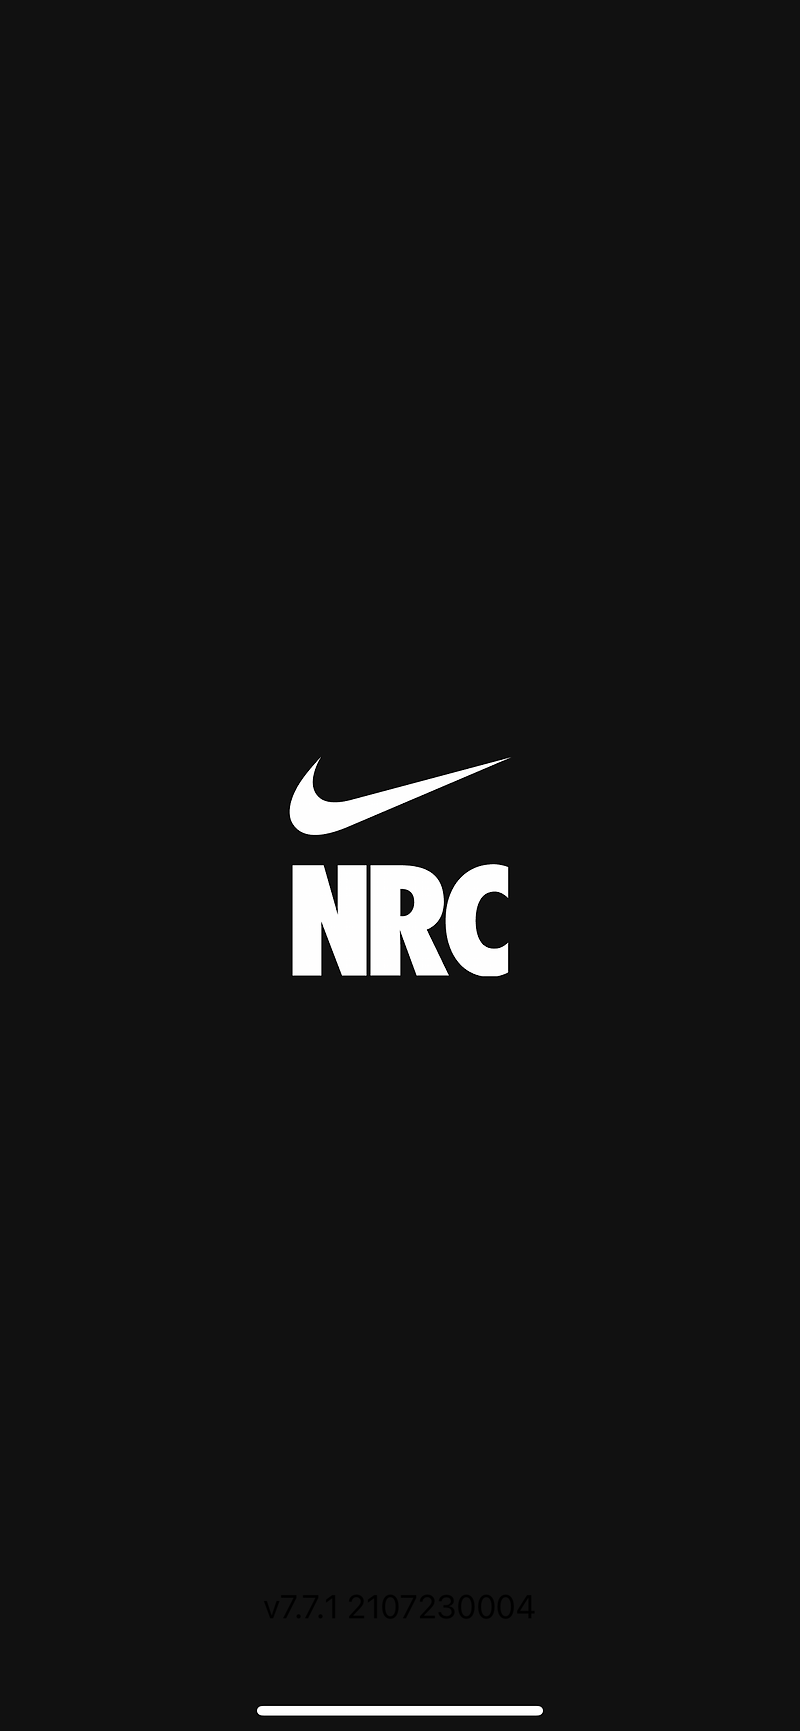 나의 달리기 측정! 나이키 런 클럽 Nike Run Club 러닝앱